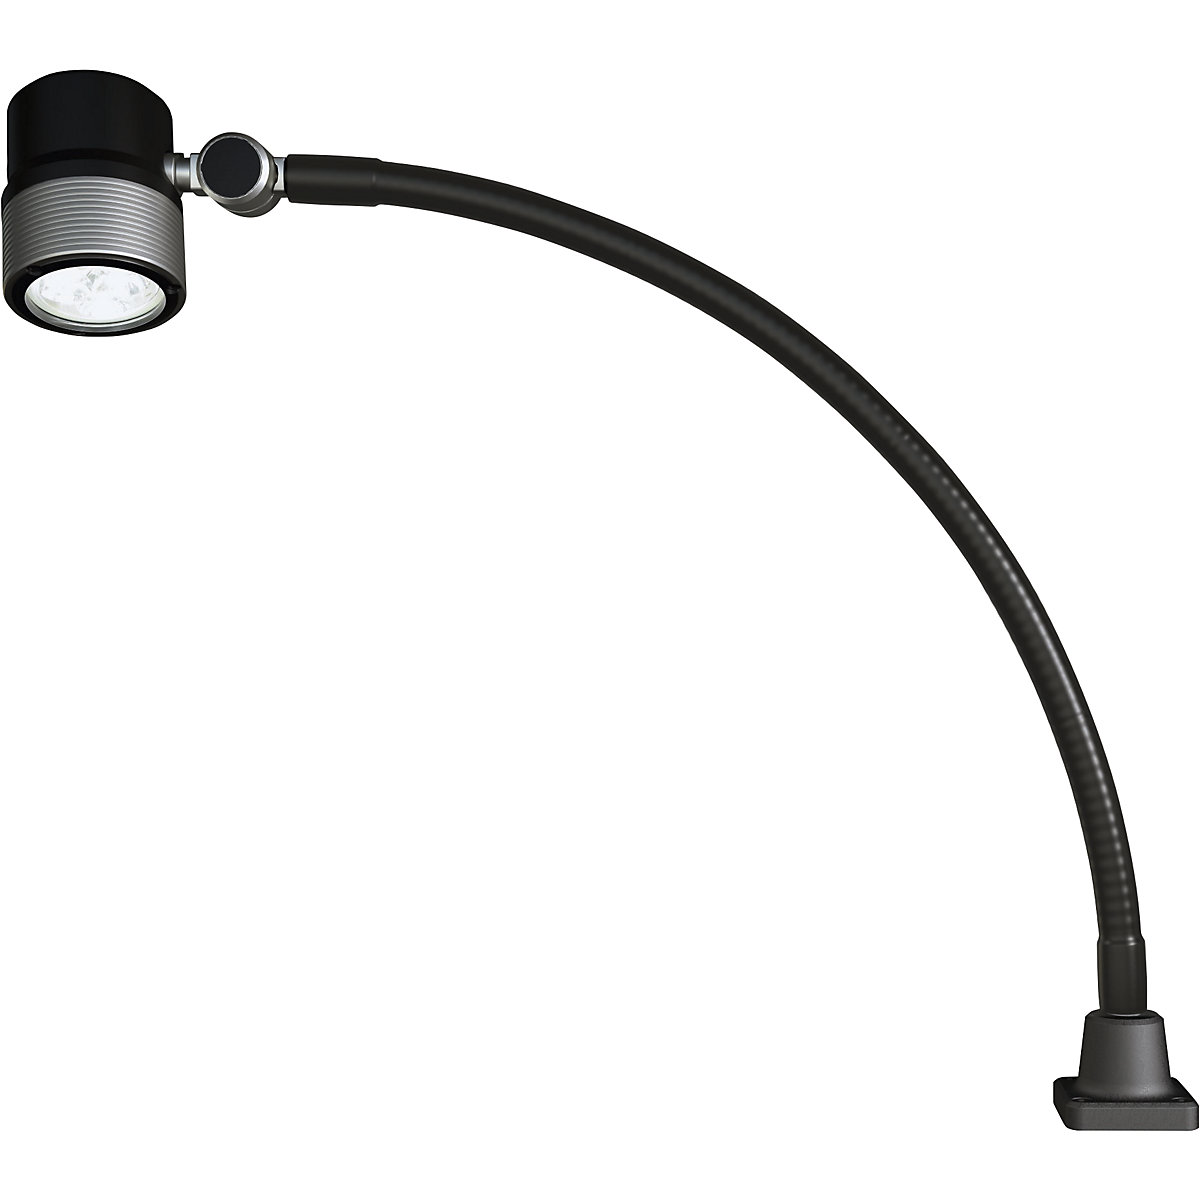 Lampă LED cu braţ flexibil pentru utilaje - Waldmann